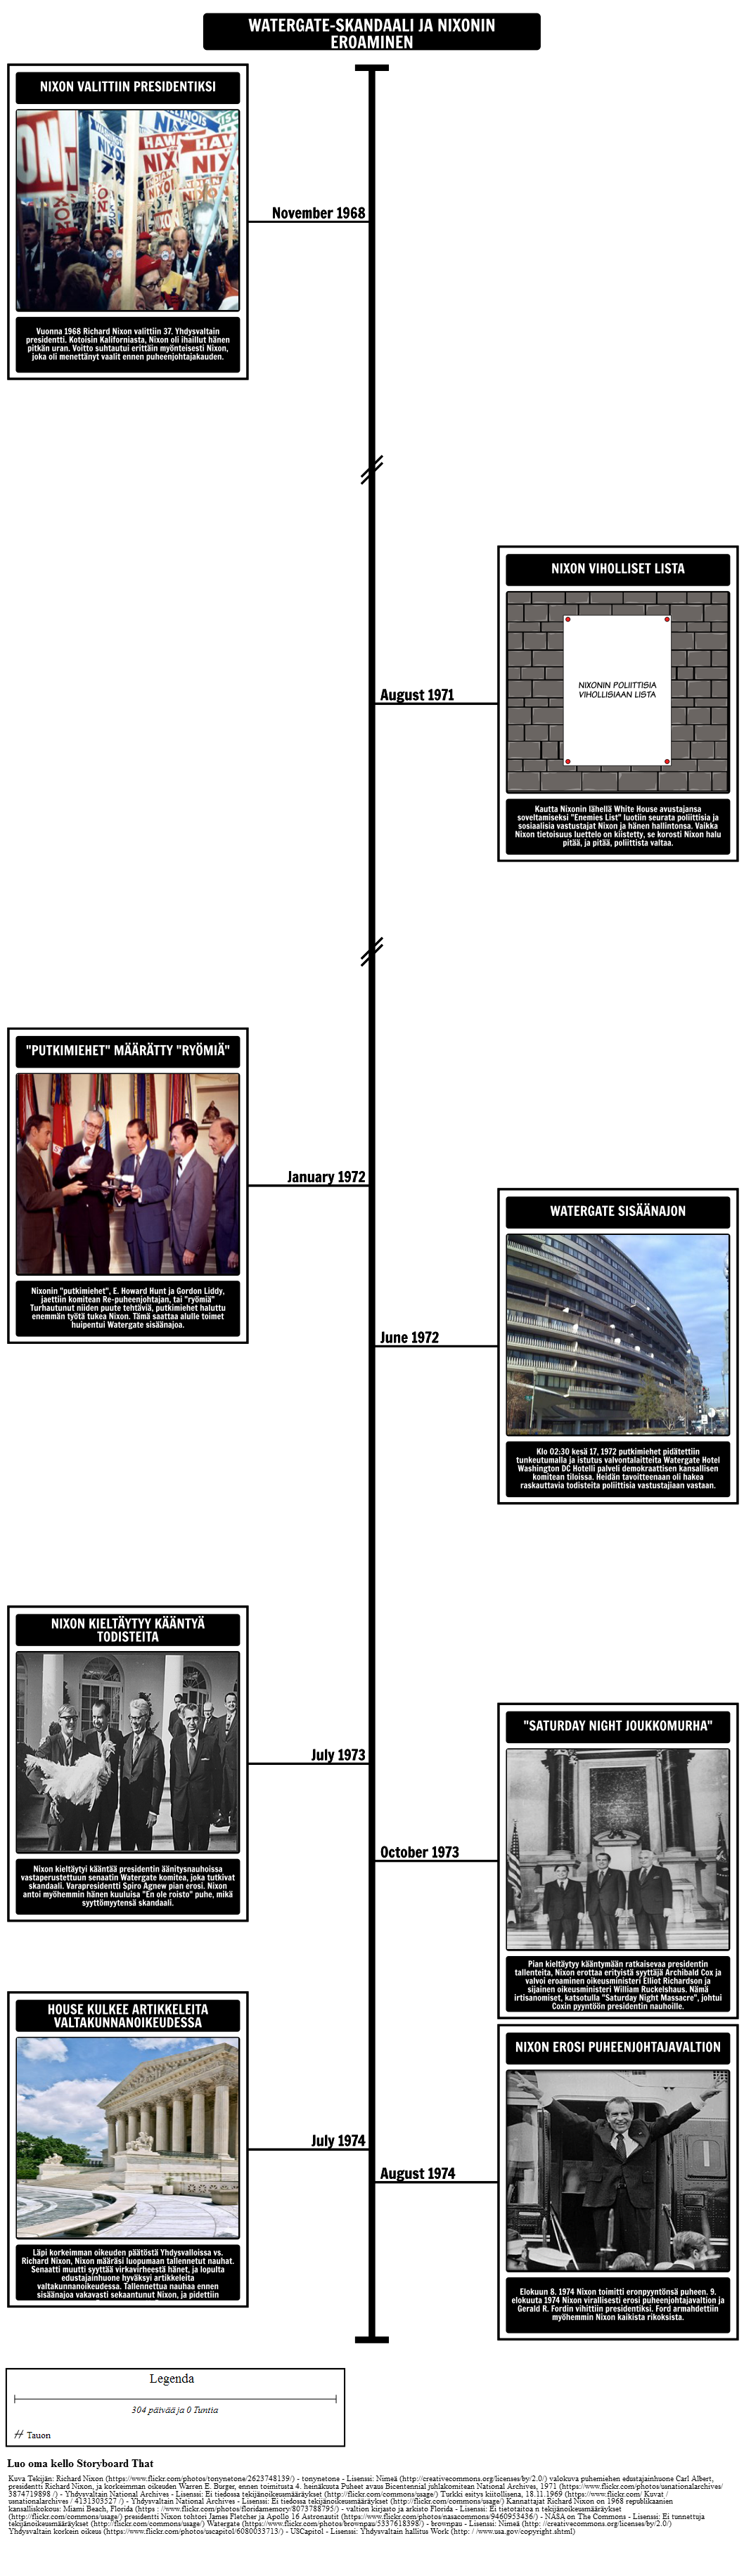 Watergate Skandaali Aikajana ja Nixonin Eroaminen